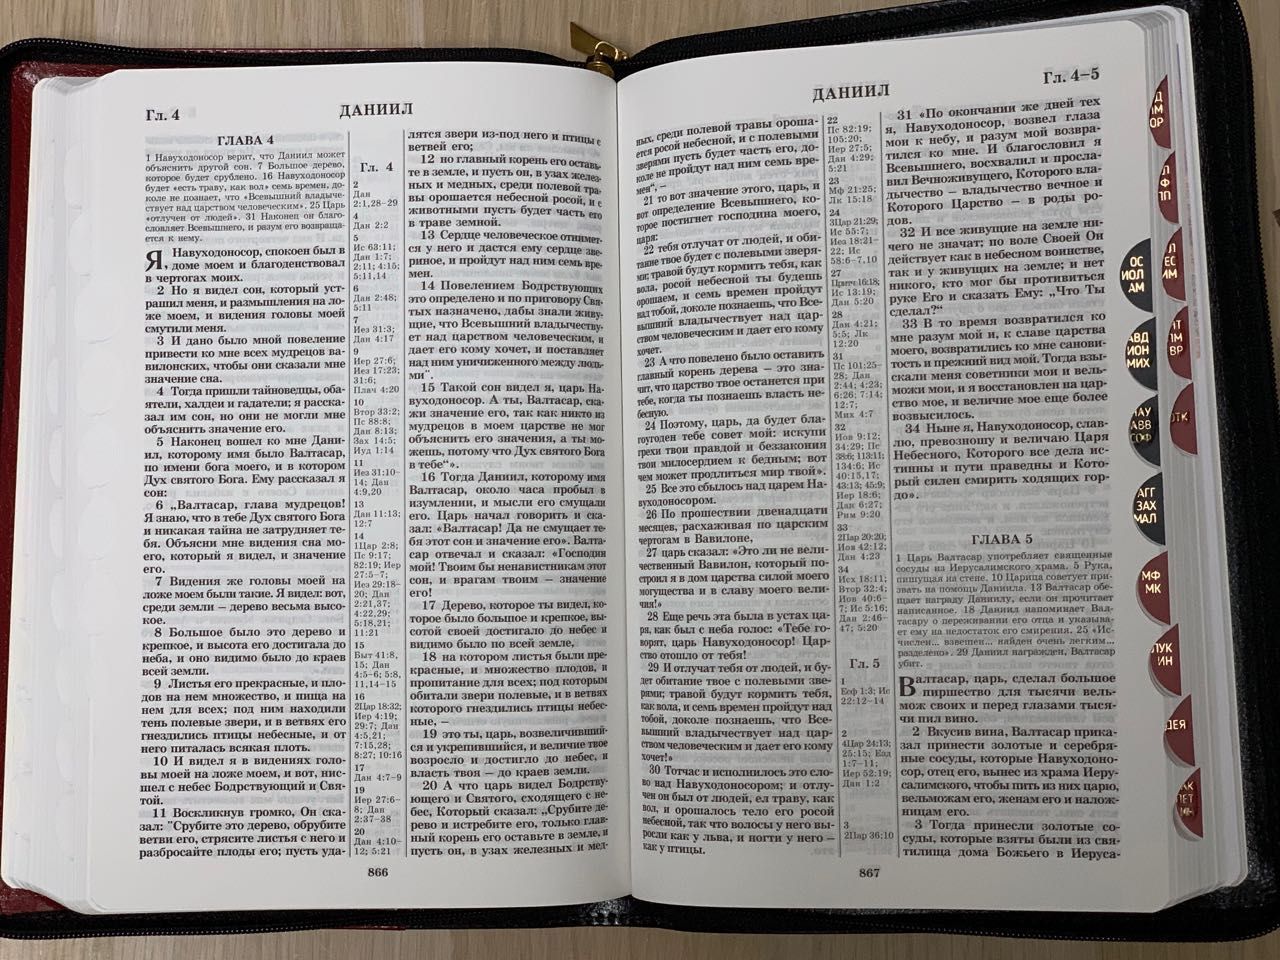 БИБЛИЯ 077zti формат, переплет из натуральной кожи на молнии с индексами, надпись золотом "Библия", цвет светло-коричневый металлик, большой формат, 180*260 мм, цветные карты, крупный шрифт